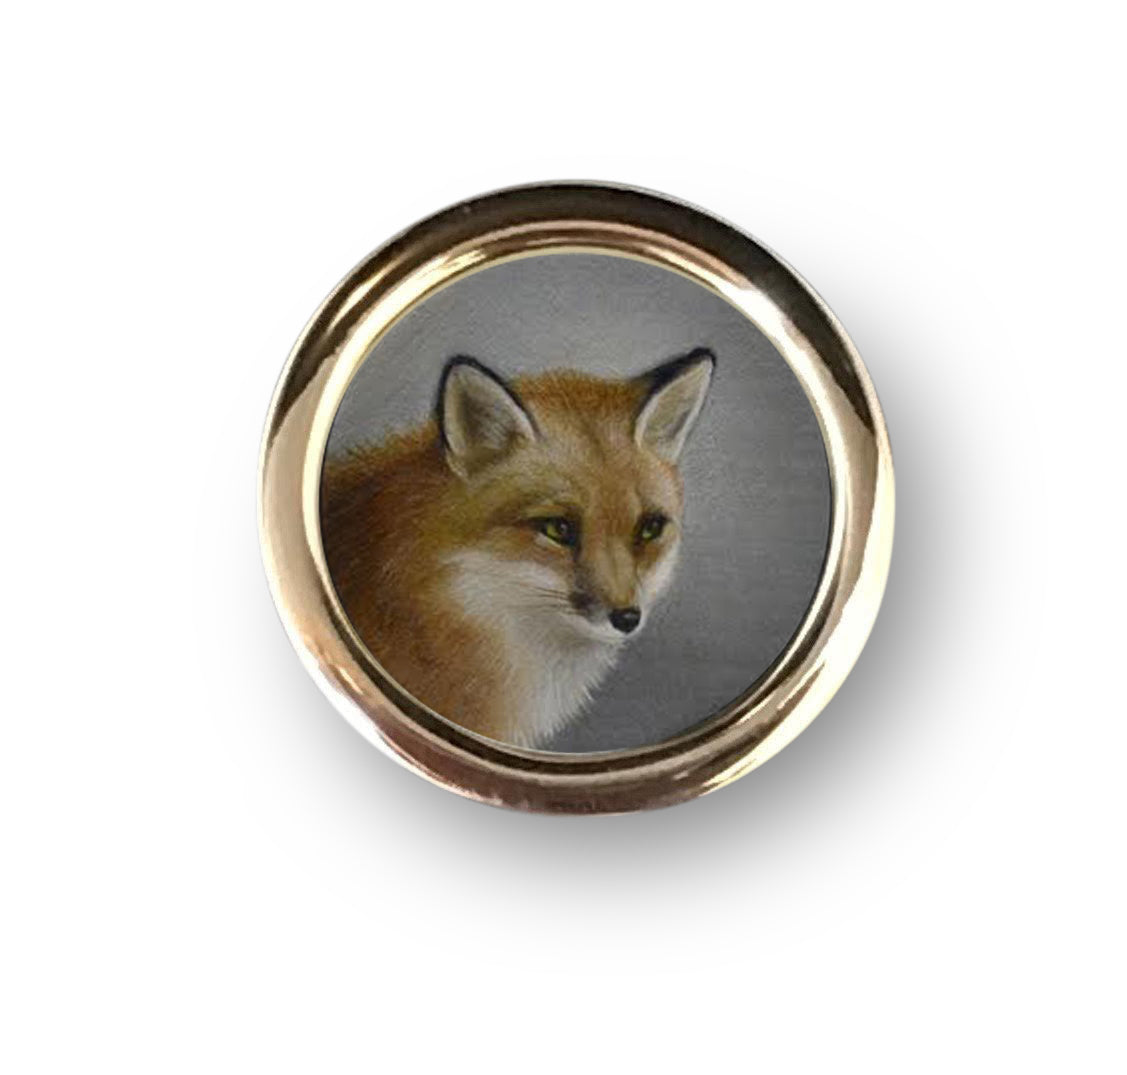 Beth de Loiselle fox oils in cufflinks